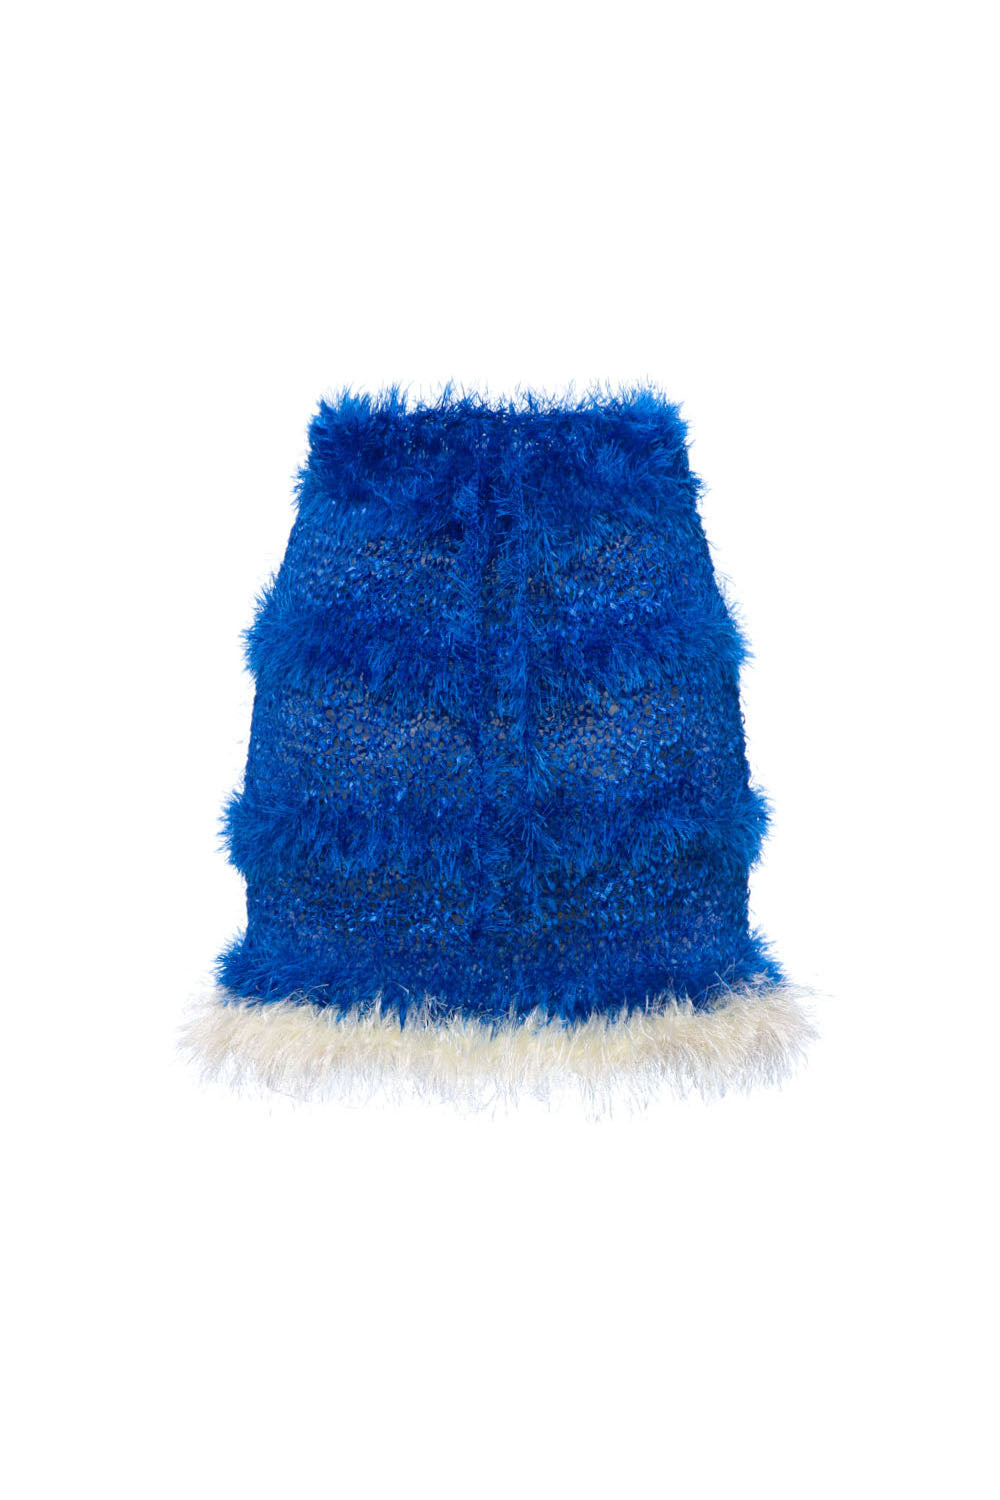 Andreeva Women's Classic Blue Handmade Knit Skirt